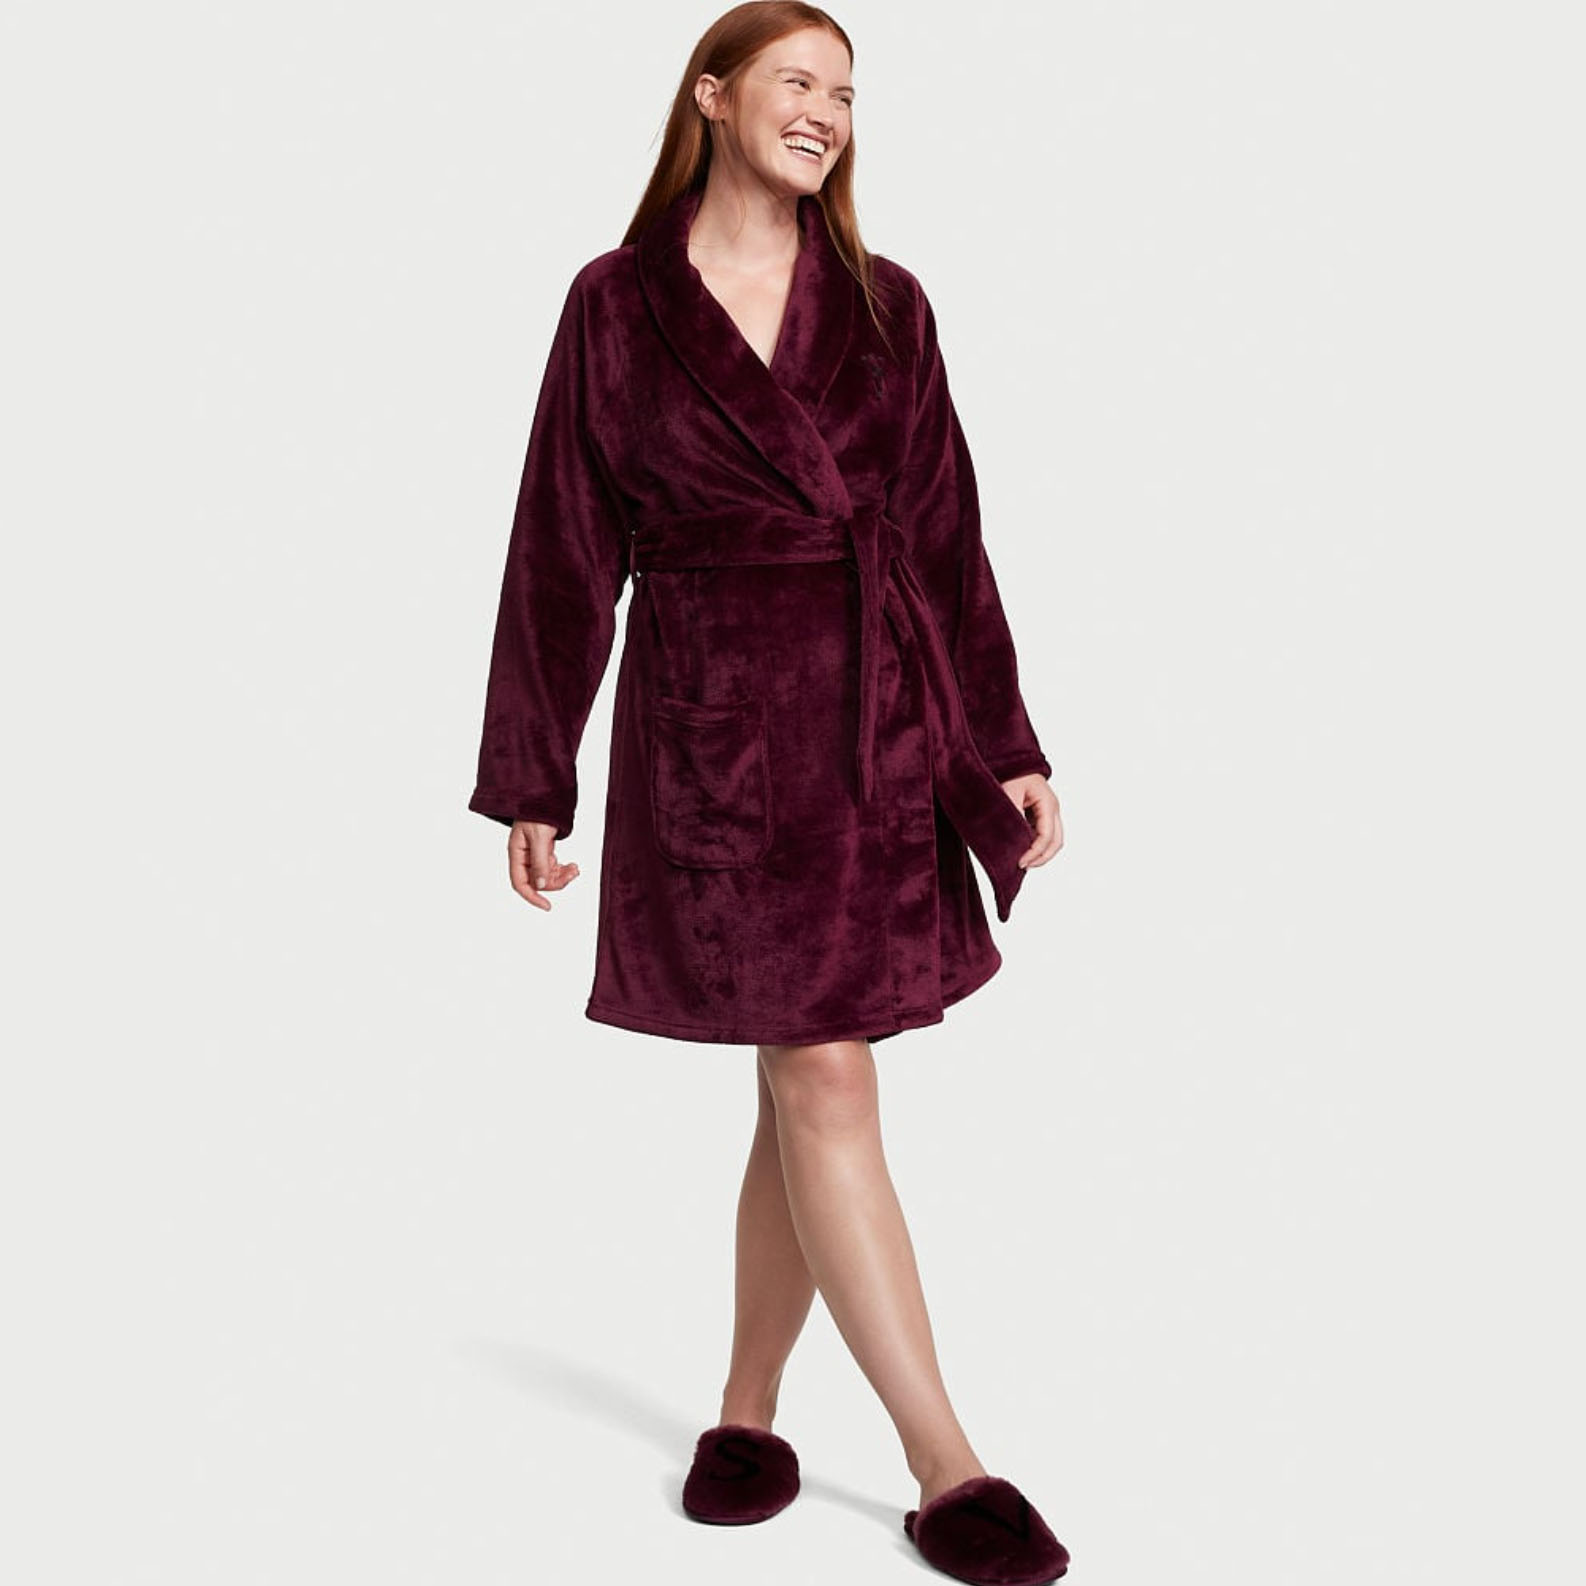 Woman wearing fluffy maroon robe